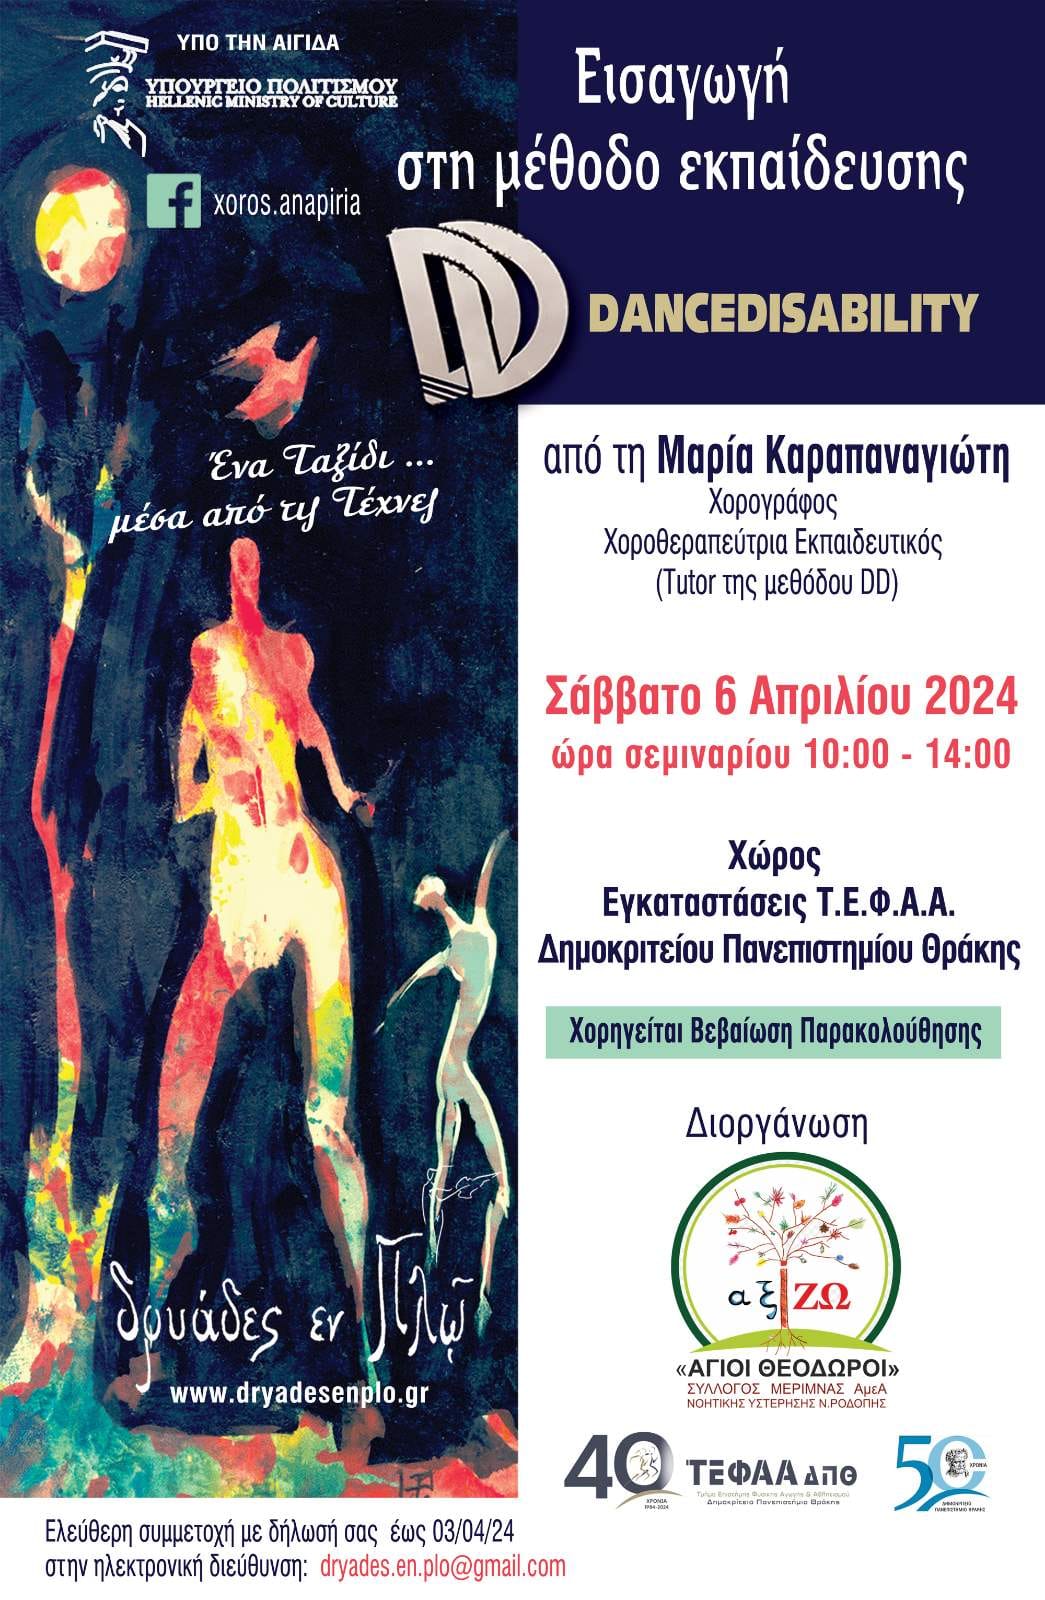 Κομοτηνή: Ο Σύλλογος ΑμΕΑ “Άγιοι  Θεόδωροι” διοργανώνει σεμινάριο για τη μέθοδο εκπαίδευσης Dance Disability στο χώρο του Τμήματος ΤΕΦΑΑ Κομοτηνής